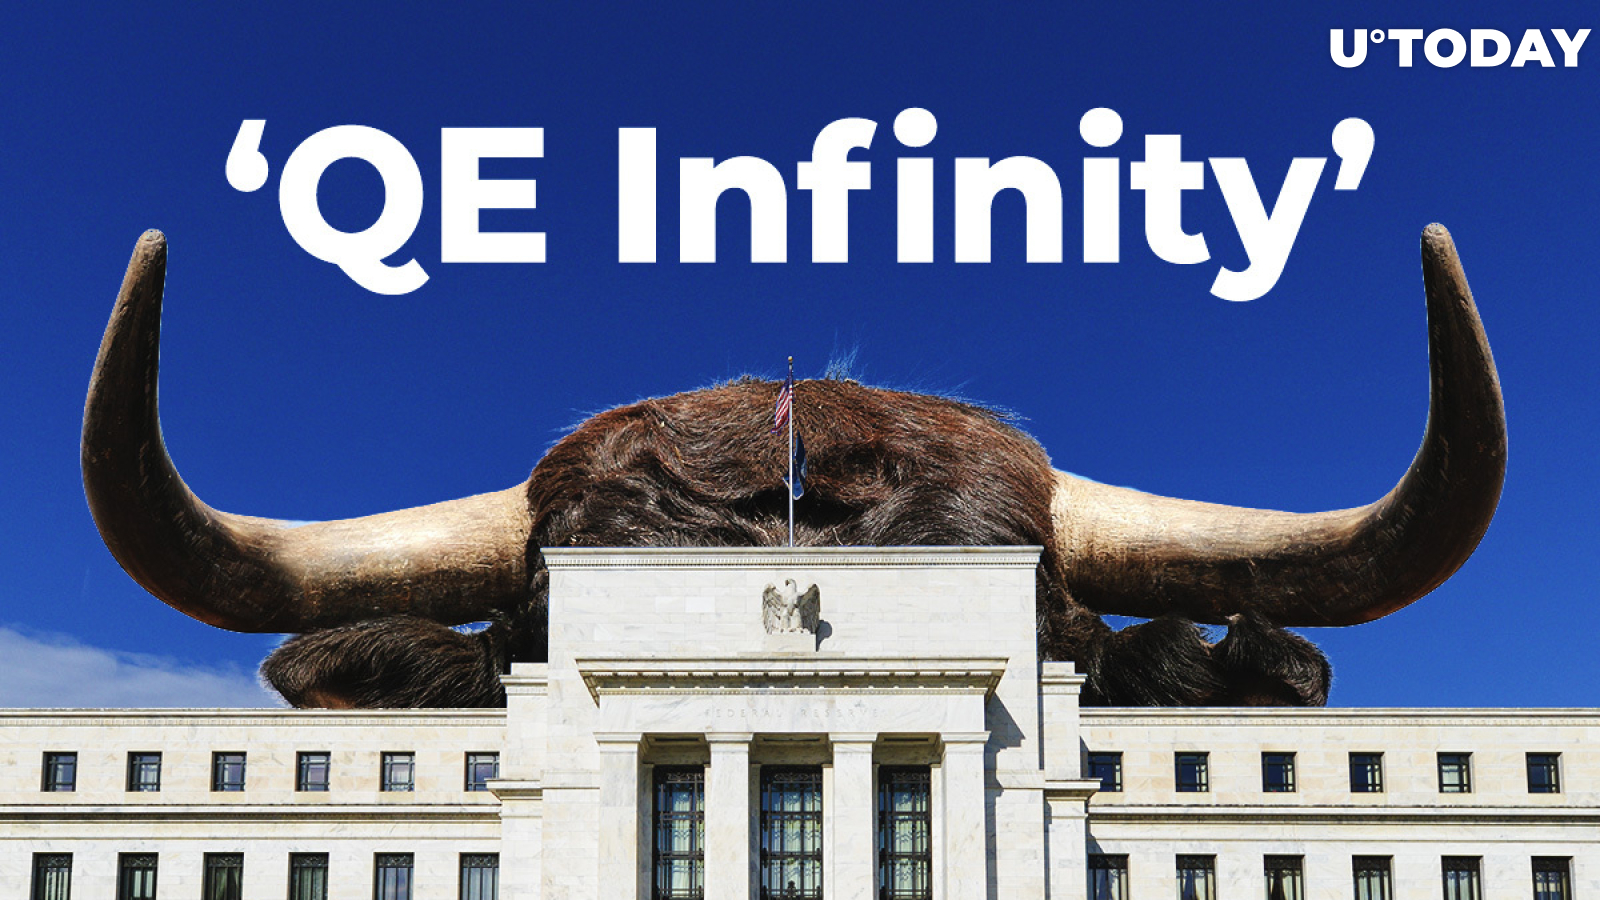 Bitcoin (BTC) Bulls Go Wild as Fed Reserve Announces ‘QE Infinity’